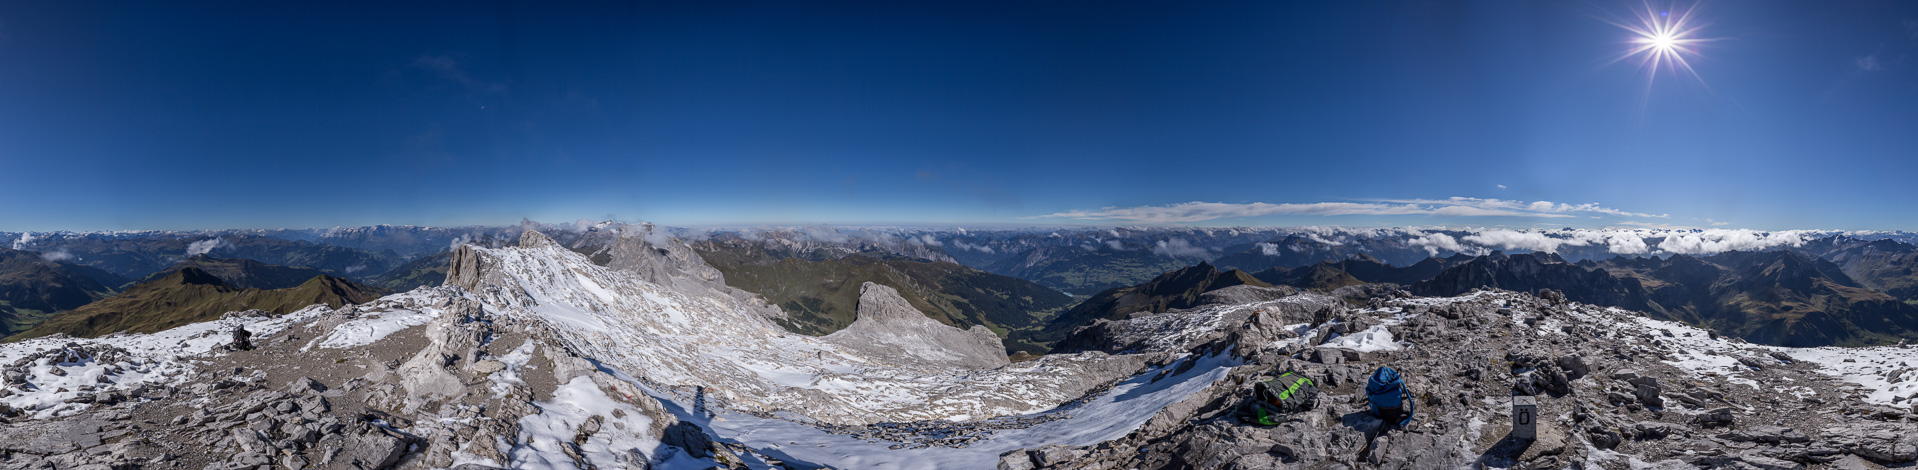 Gipfelpanorama mit den Bündner Bergen, Silvretta und einigen Spitzen der Berner und Walliser Alpen.